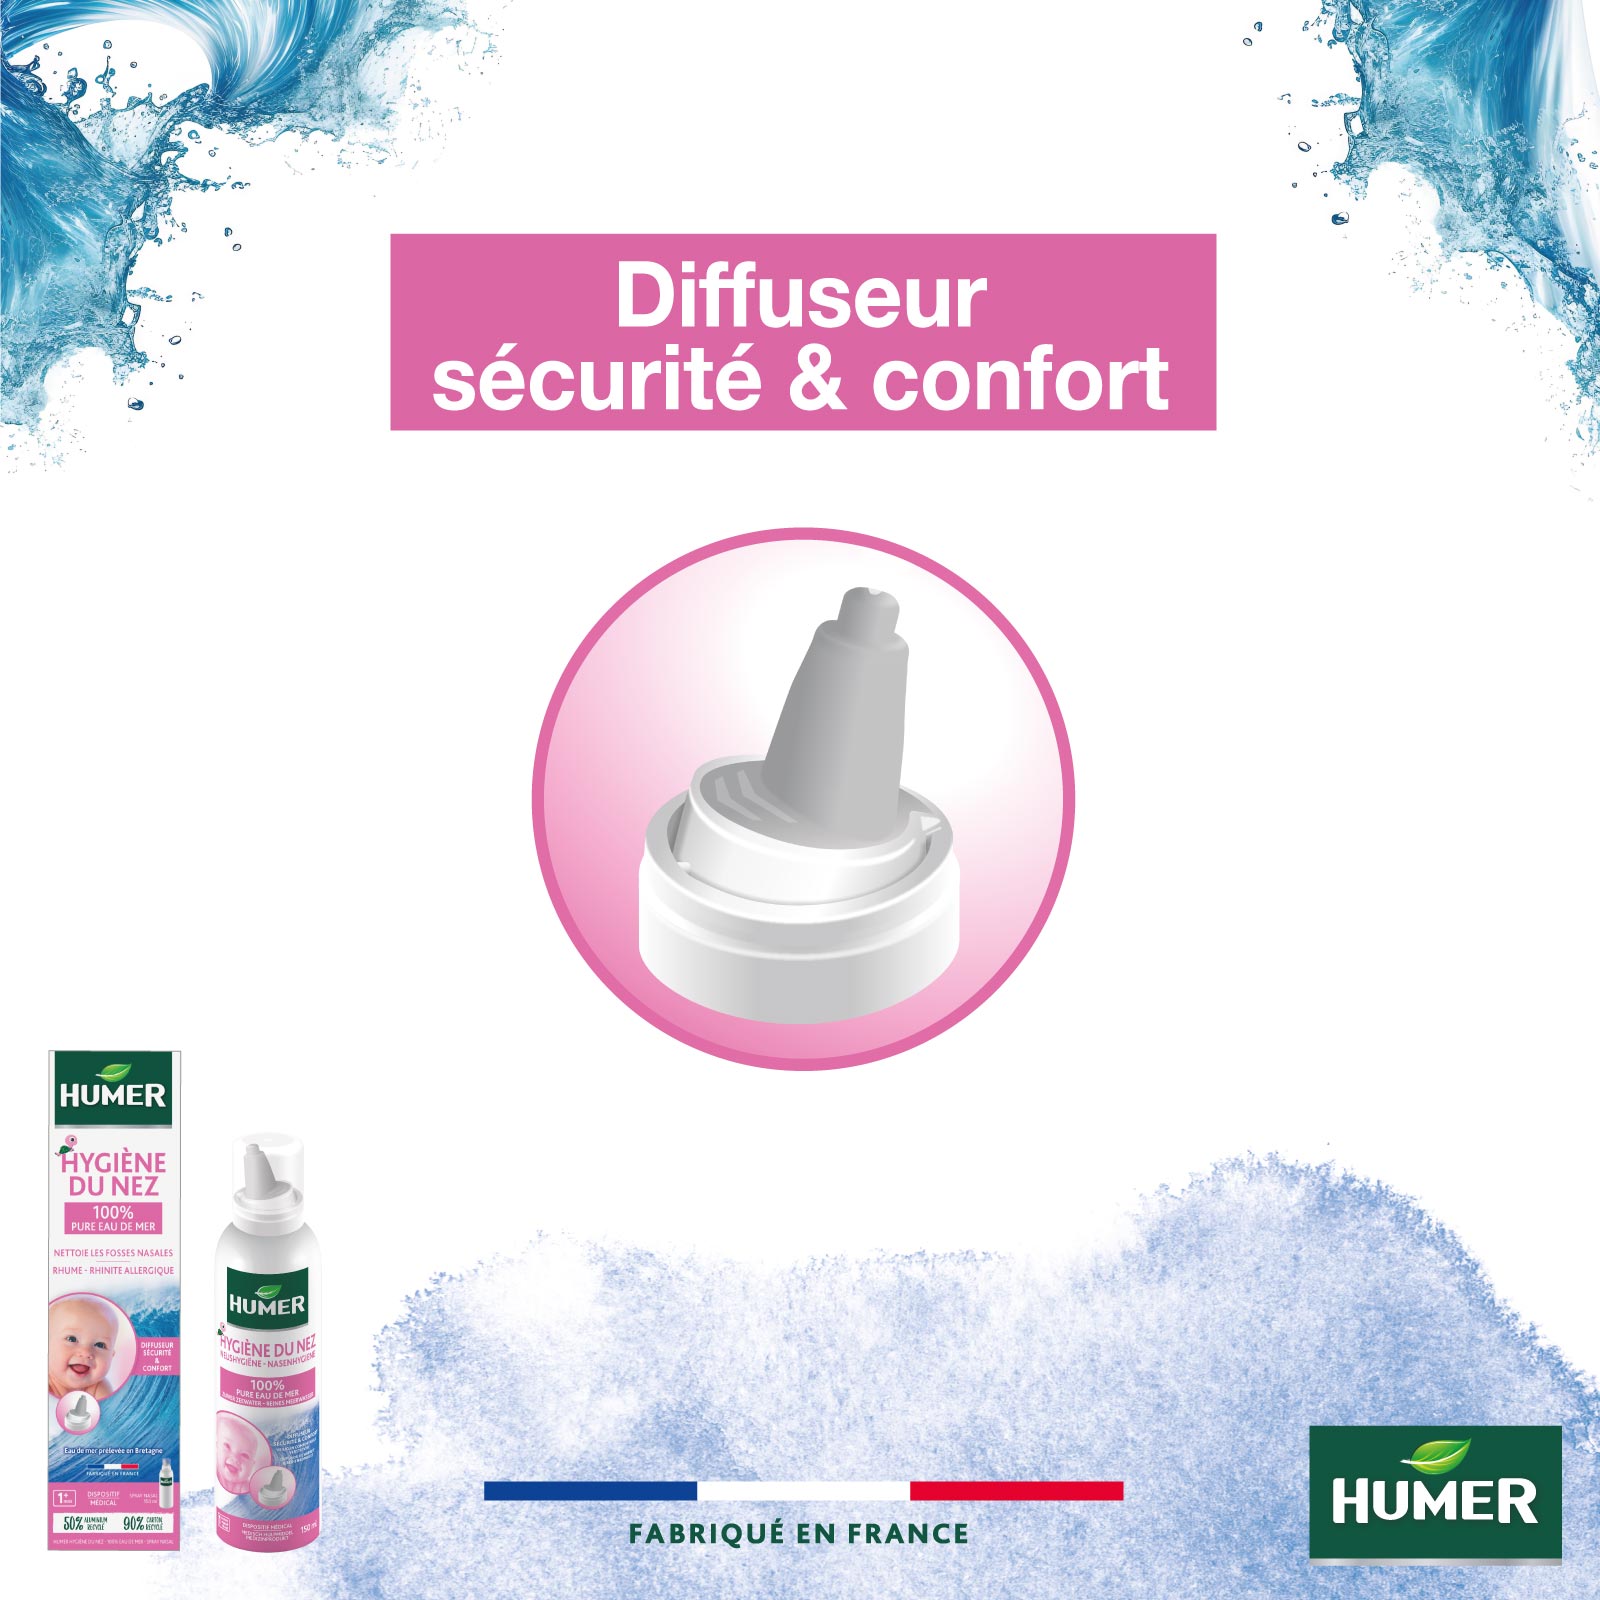 Visuel Humer hygiène du nez nourrisson diffuseur sécurité et confort